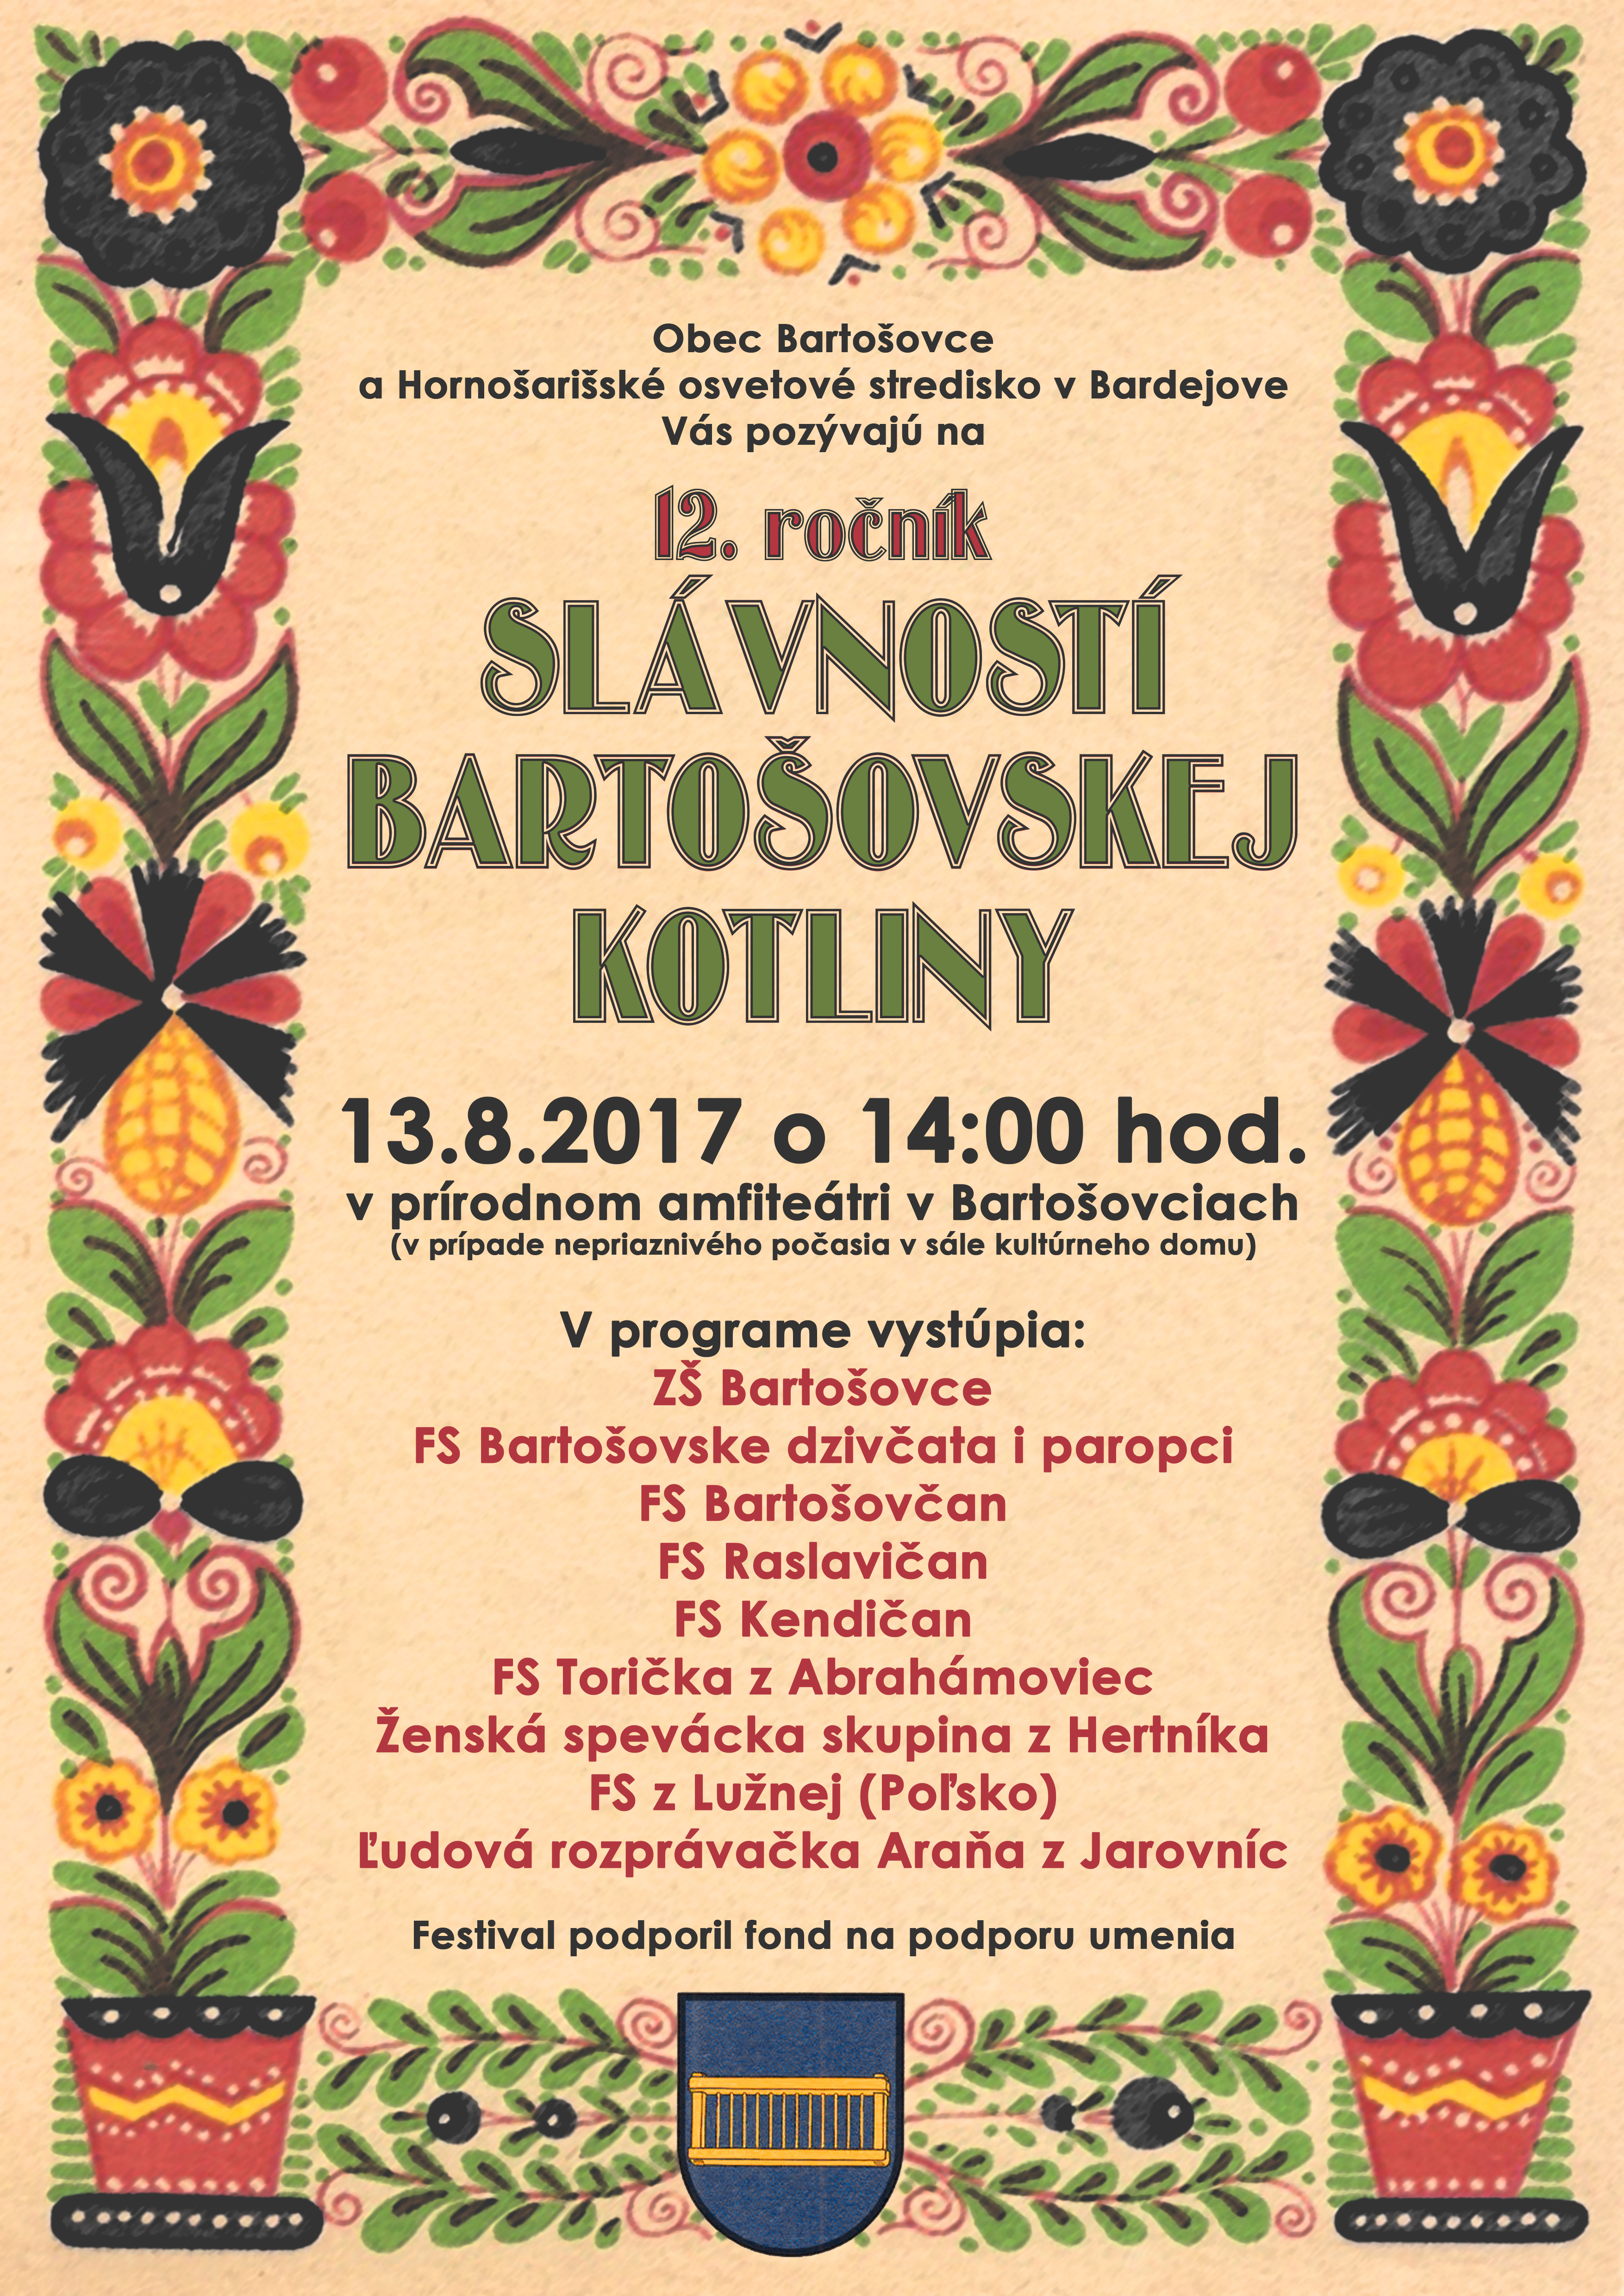 Slávnosti Bartošovskej kotliny 2017 -12. ročník